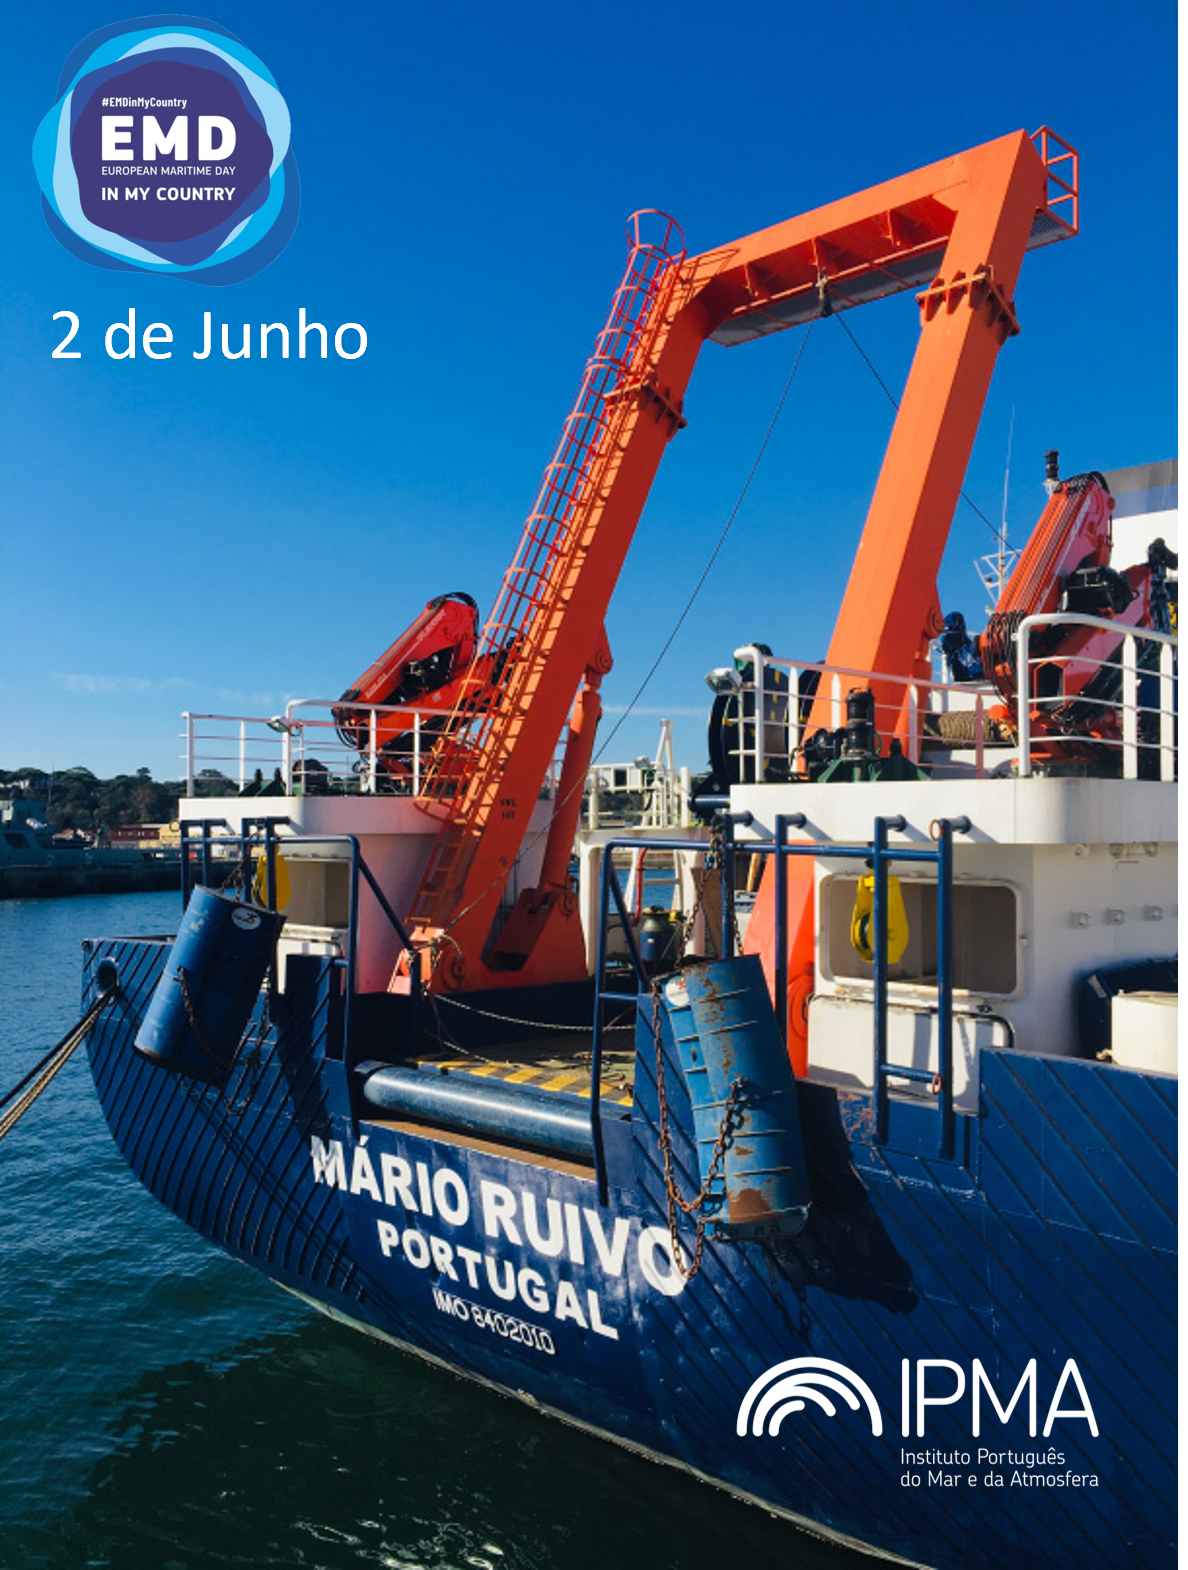 IPMA Research Vessel (RV), Mário Ruivo